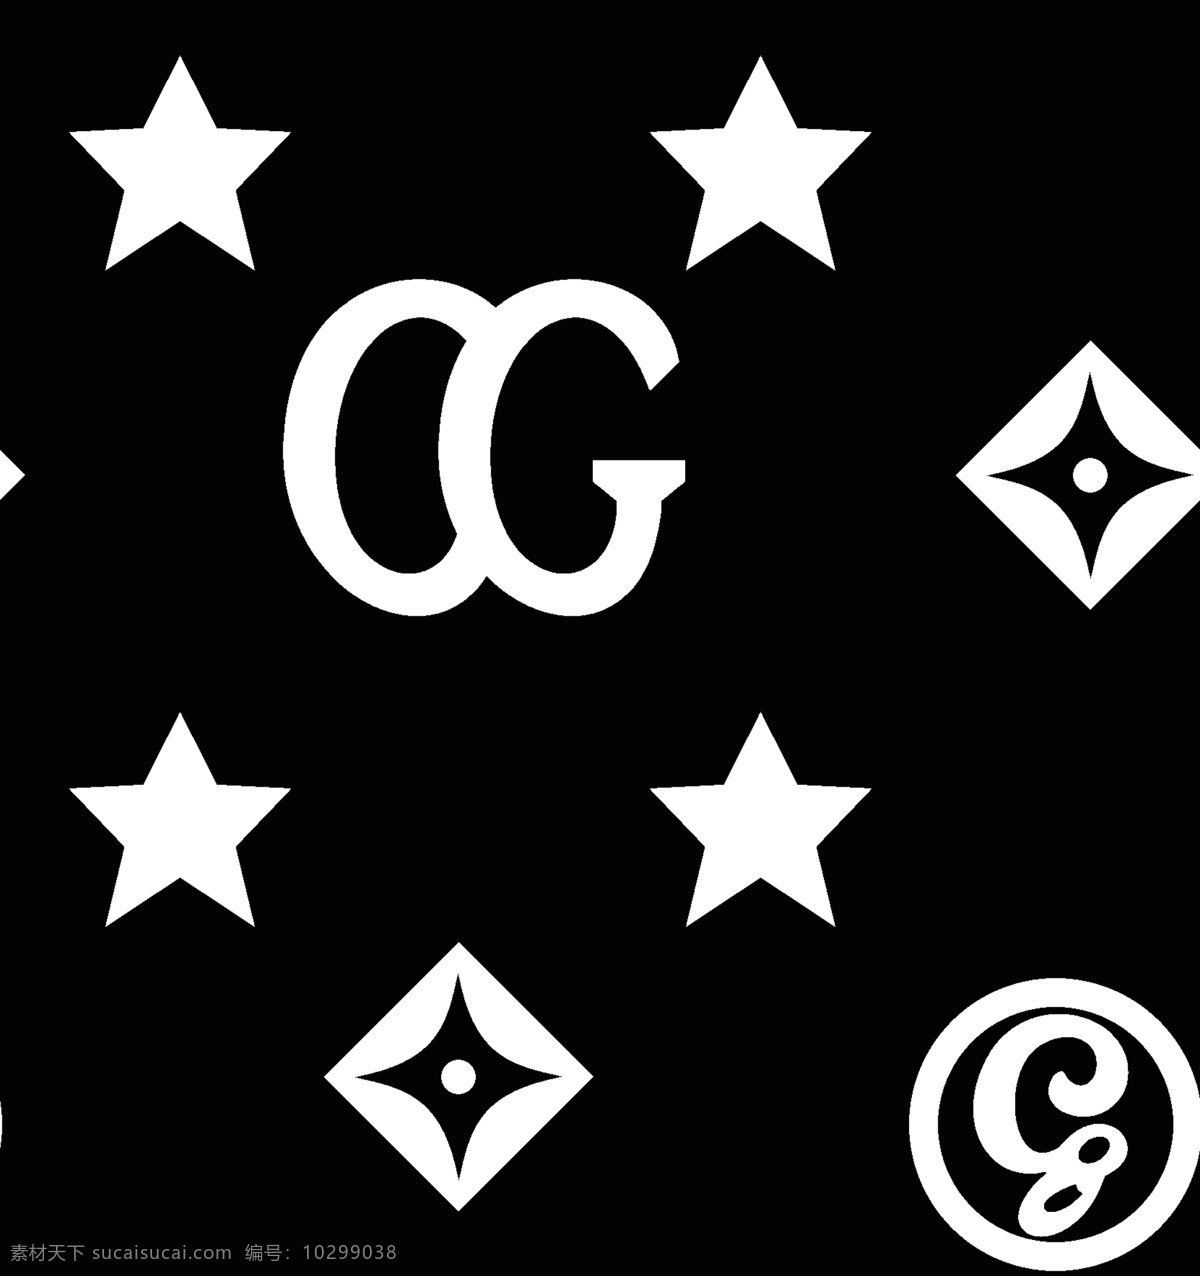 大牌 gg g 星 星黑 色 潮 牌 字母 元素 大牌素材 分层